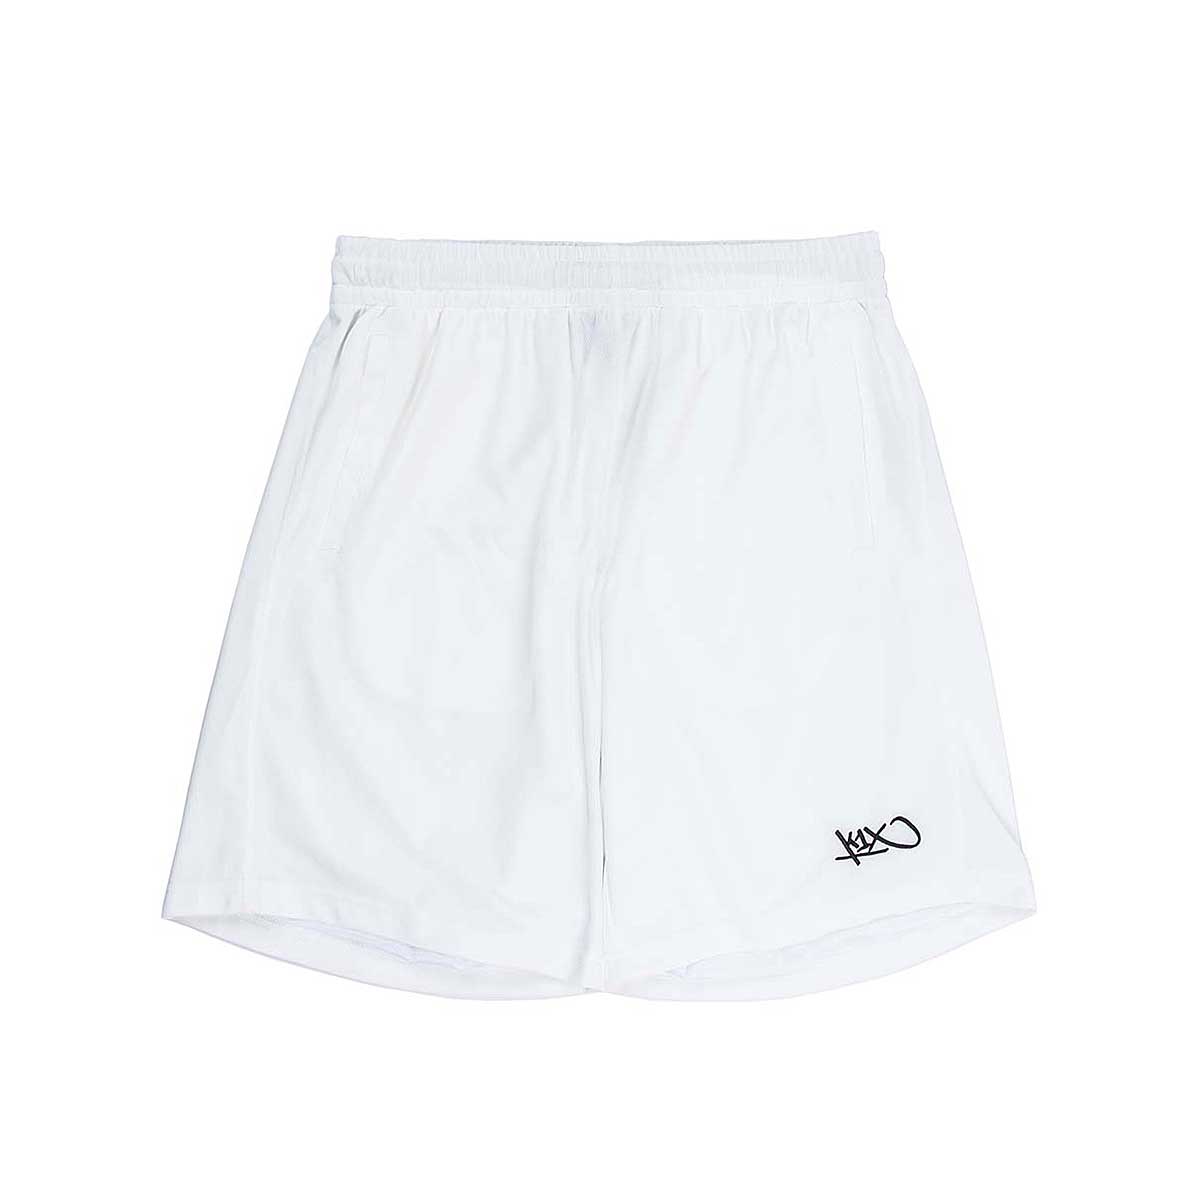 K1X Micromesh Shorts, White